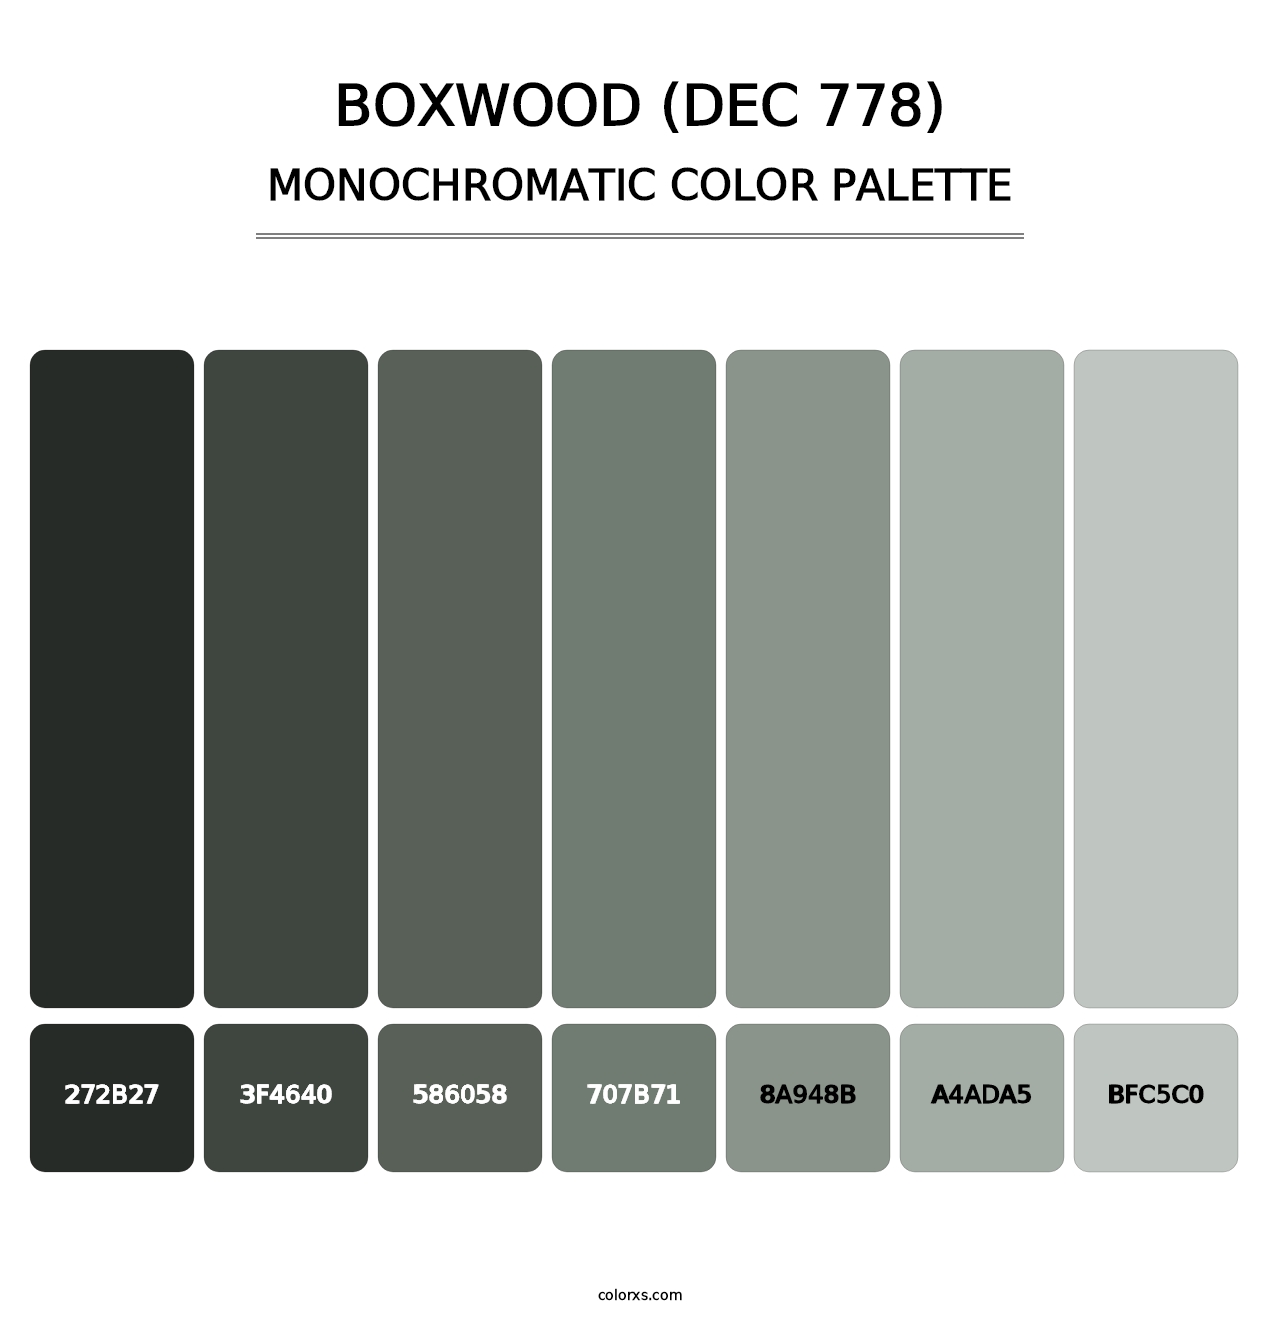 Boxwood (DEC 778) - Monochromatic Color Palette